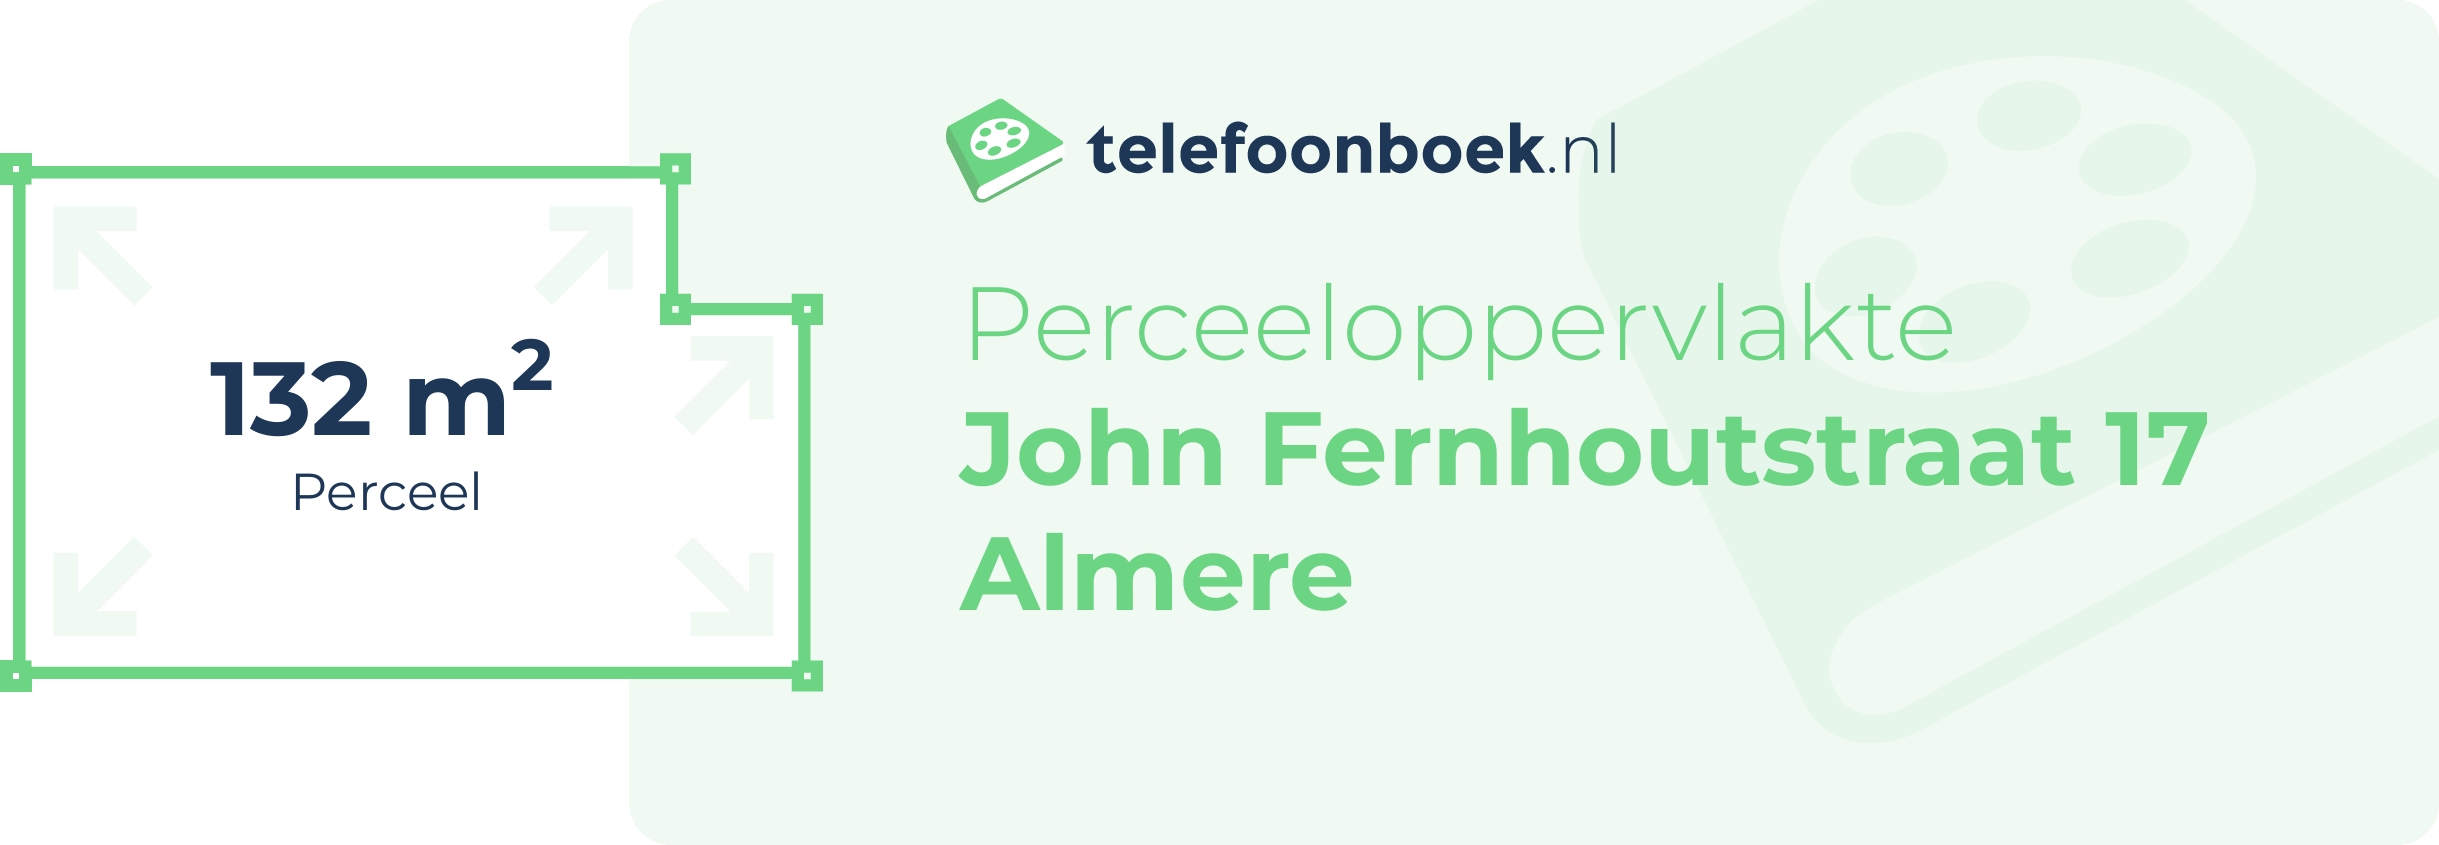 Perceeloppervlakte John Fernhoutstraat 17 Almere